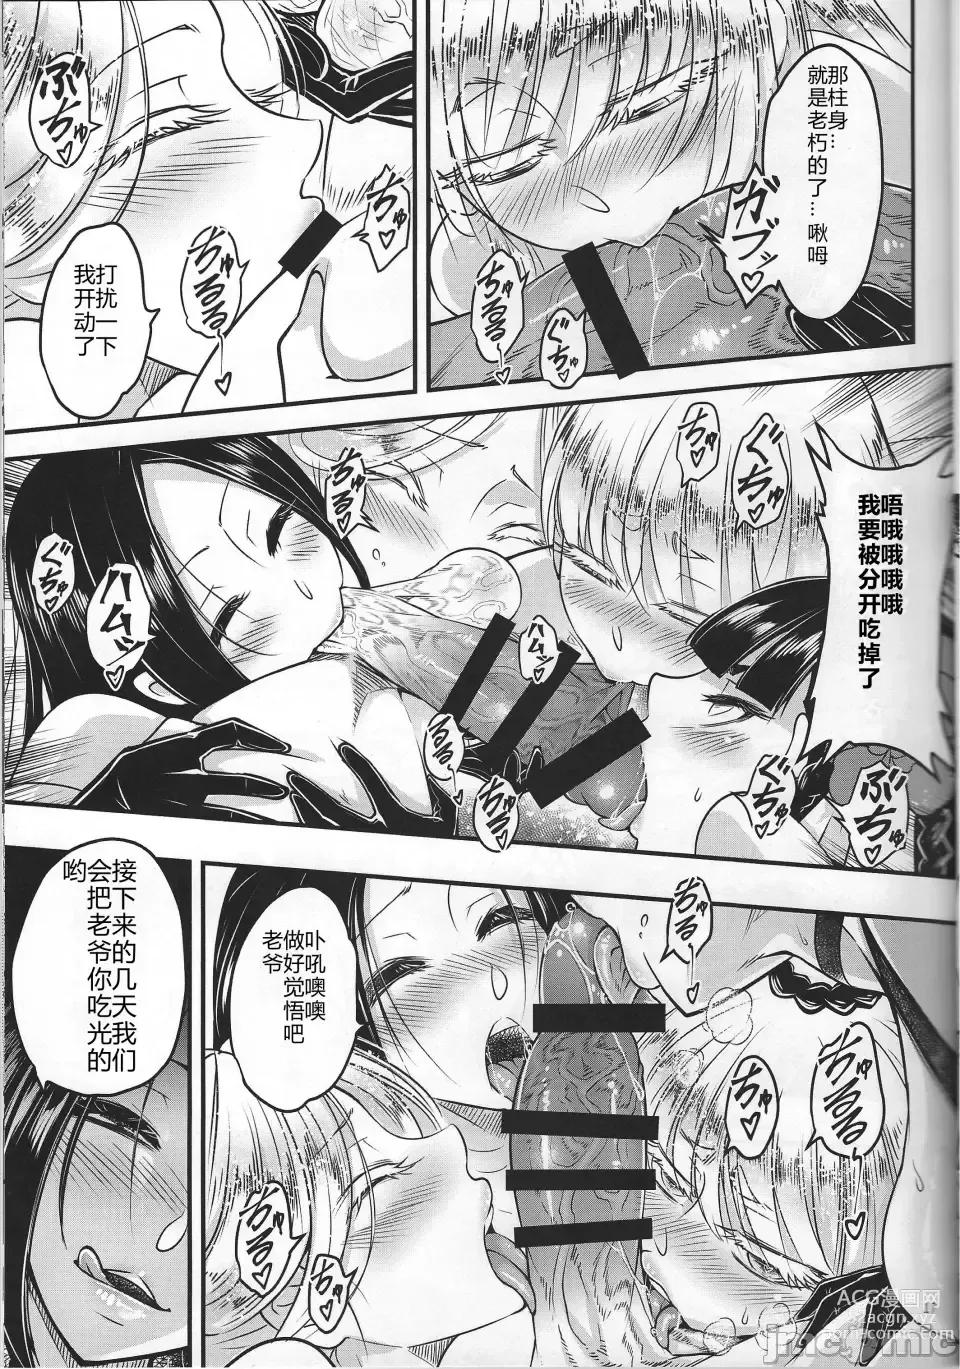 Page 18 of doujinshi Hyakkasou 12 <<Jitsuroku Makyou Hyakkasou Kikou>>